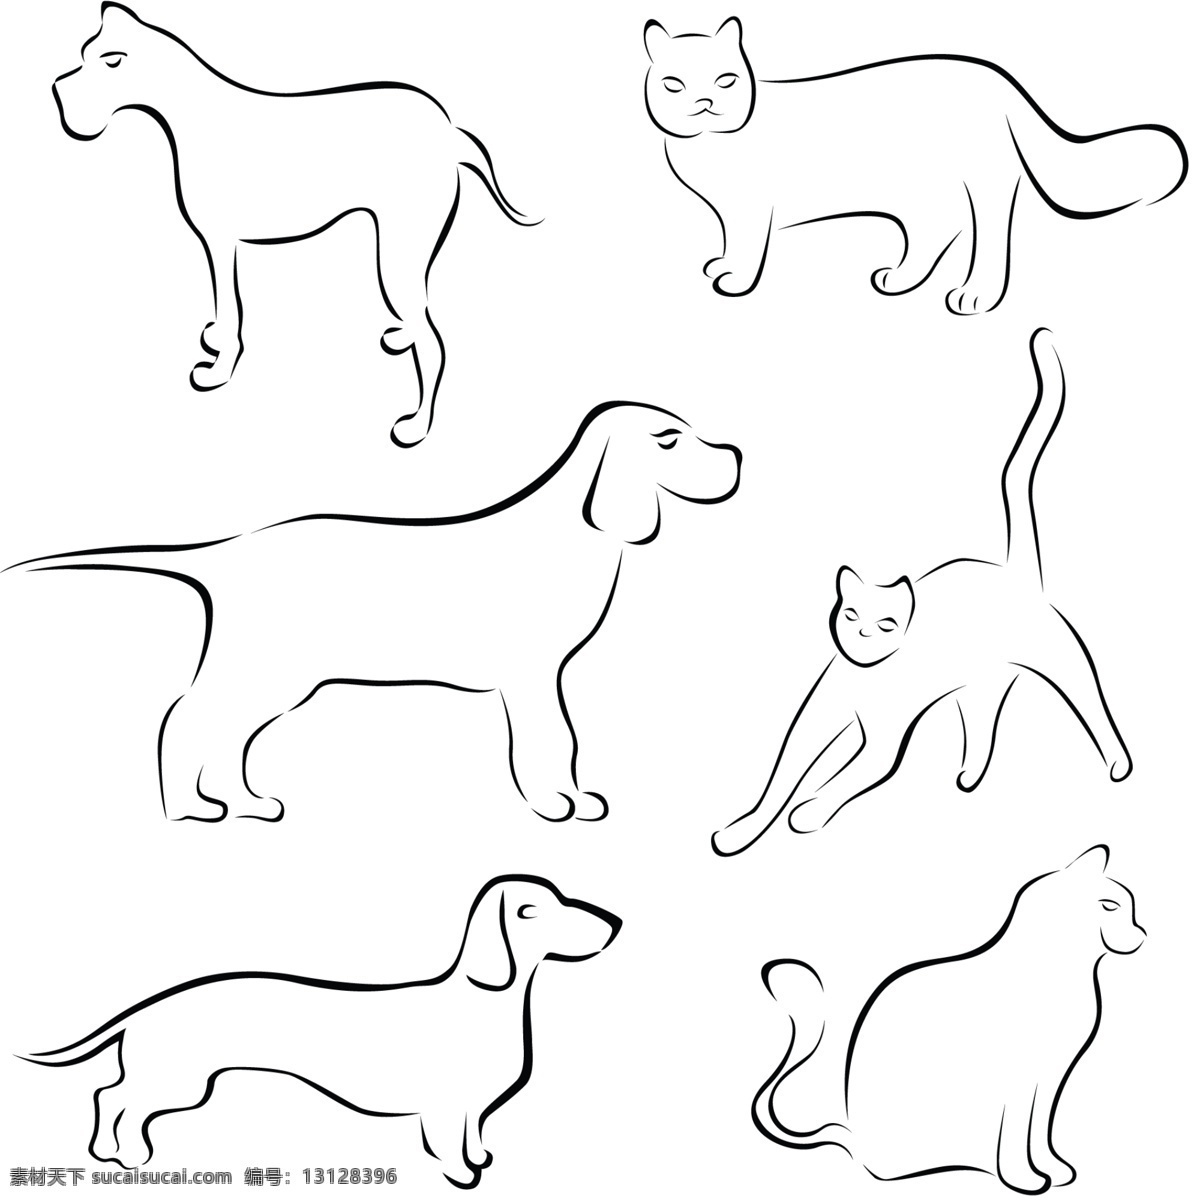 精美 手绘 猫 狗 矢量 动物 矢量素材 手稿 线条 矢量图 其他矢量图